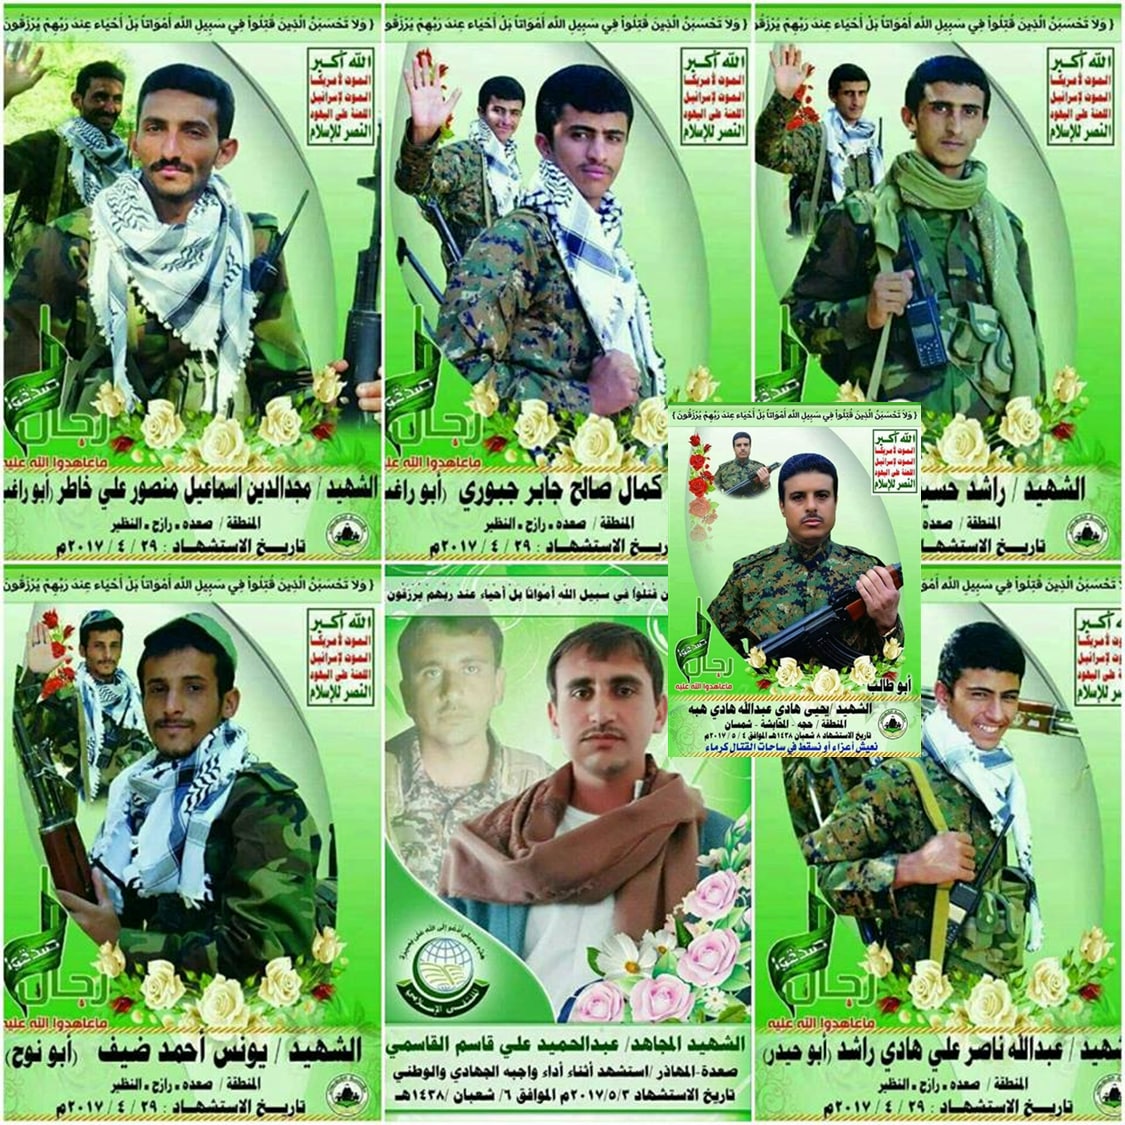 عشرات القتلى بينهم 6 قياديين مقربين من الحوثي دربهم إيرانيين بشكل خاص ..صور وتفاصيل